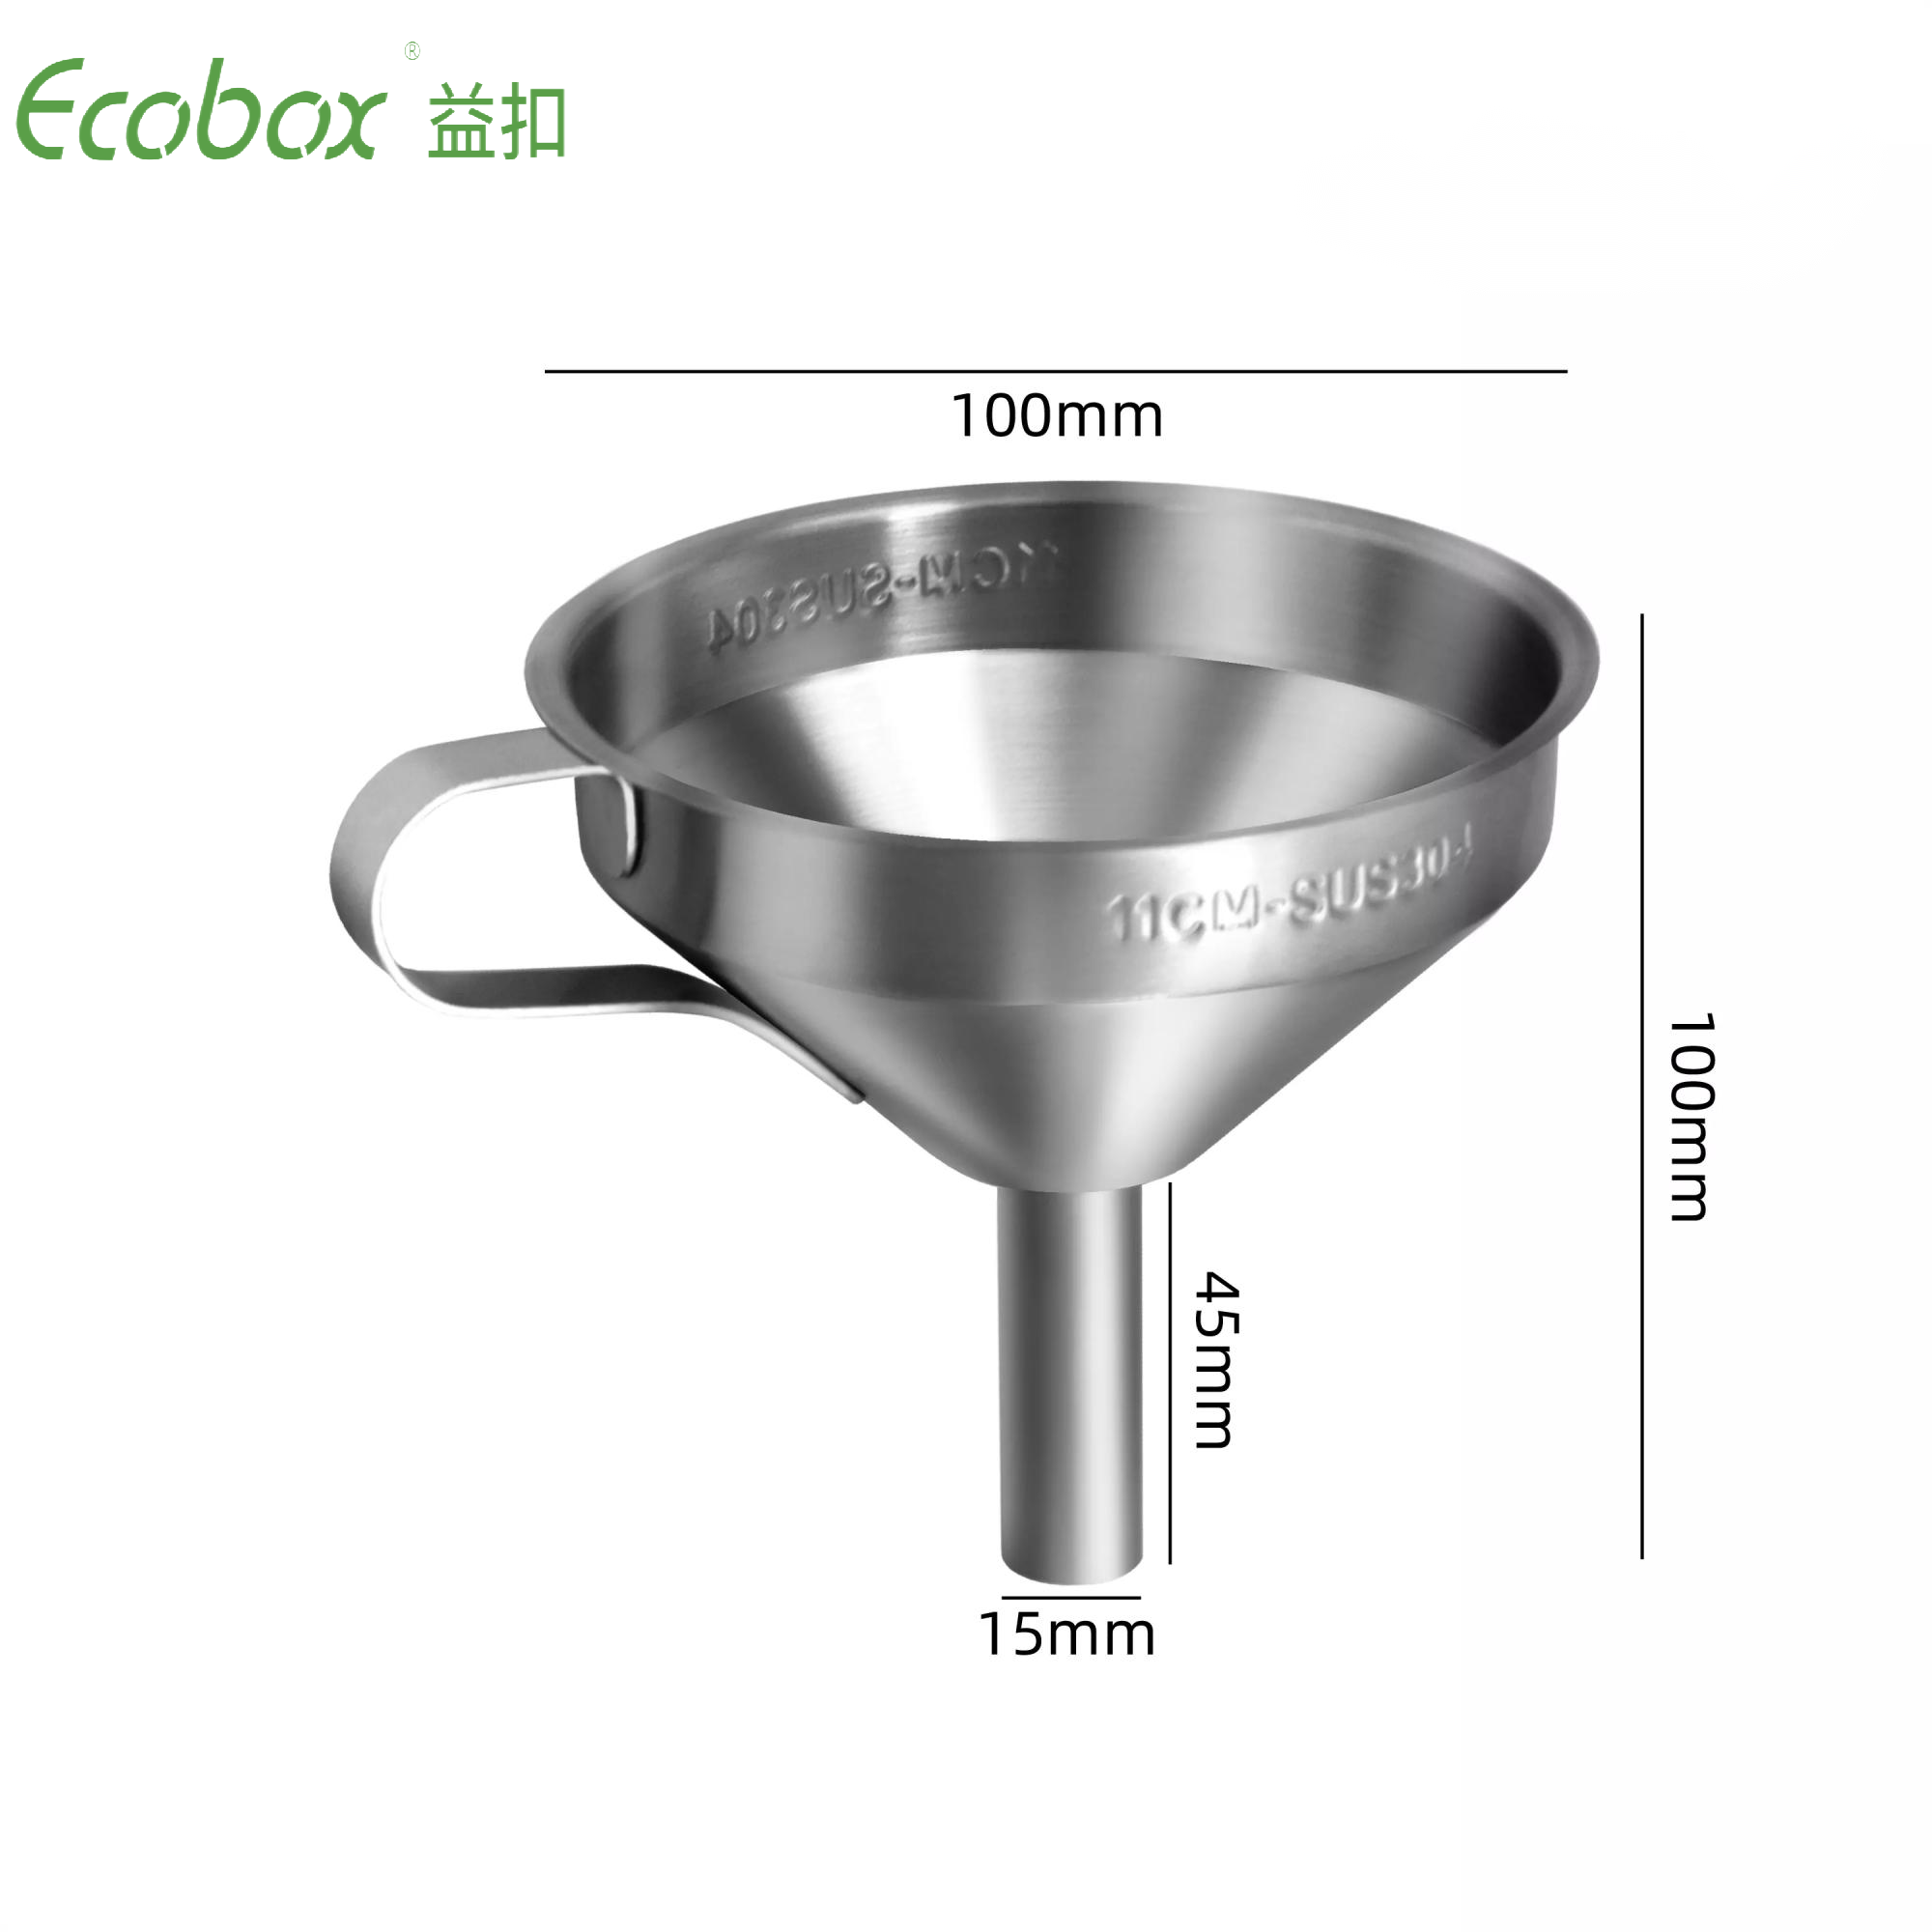 Contenedor dispensador de tambor líquido de aceite inoxidable de calidad alimentaria Ecobox para tiendas zerowaste